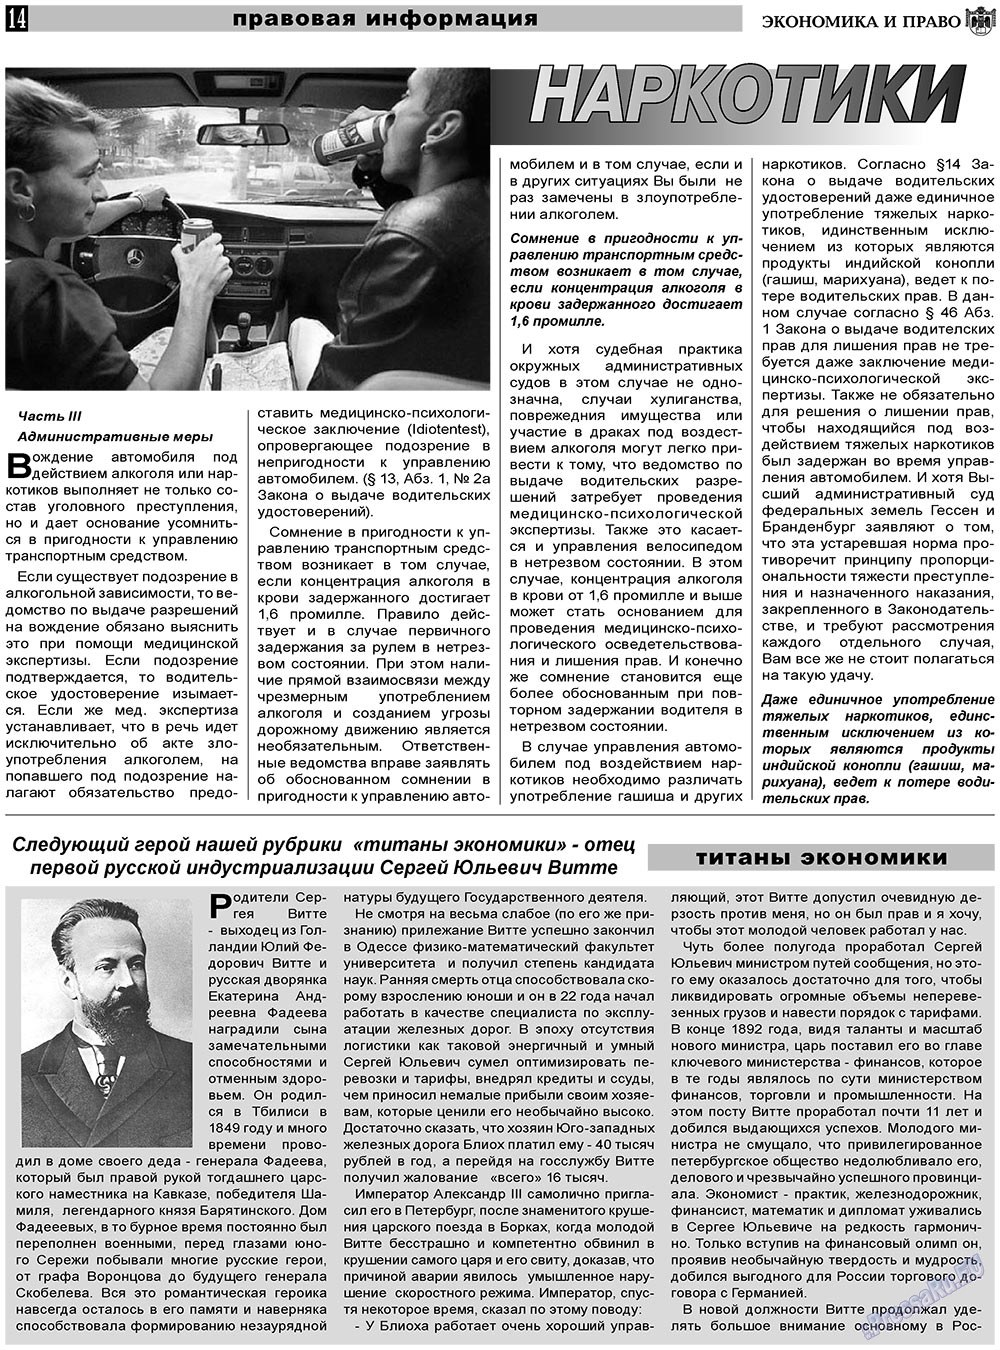 Экономика и право, газета. 2011 №5 стр.14